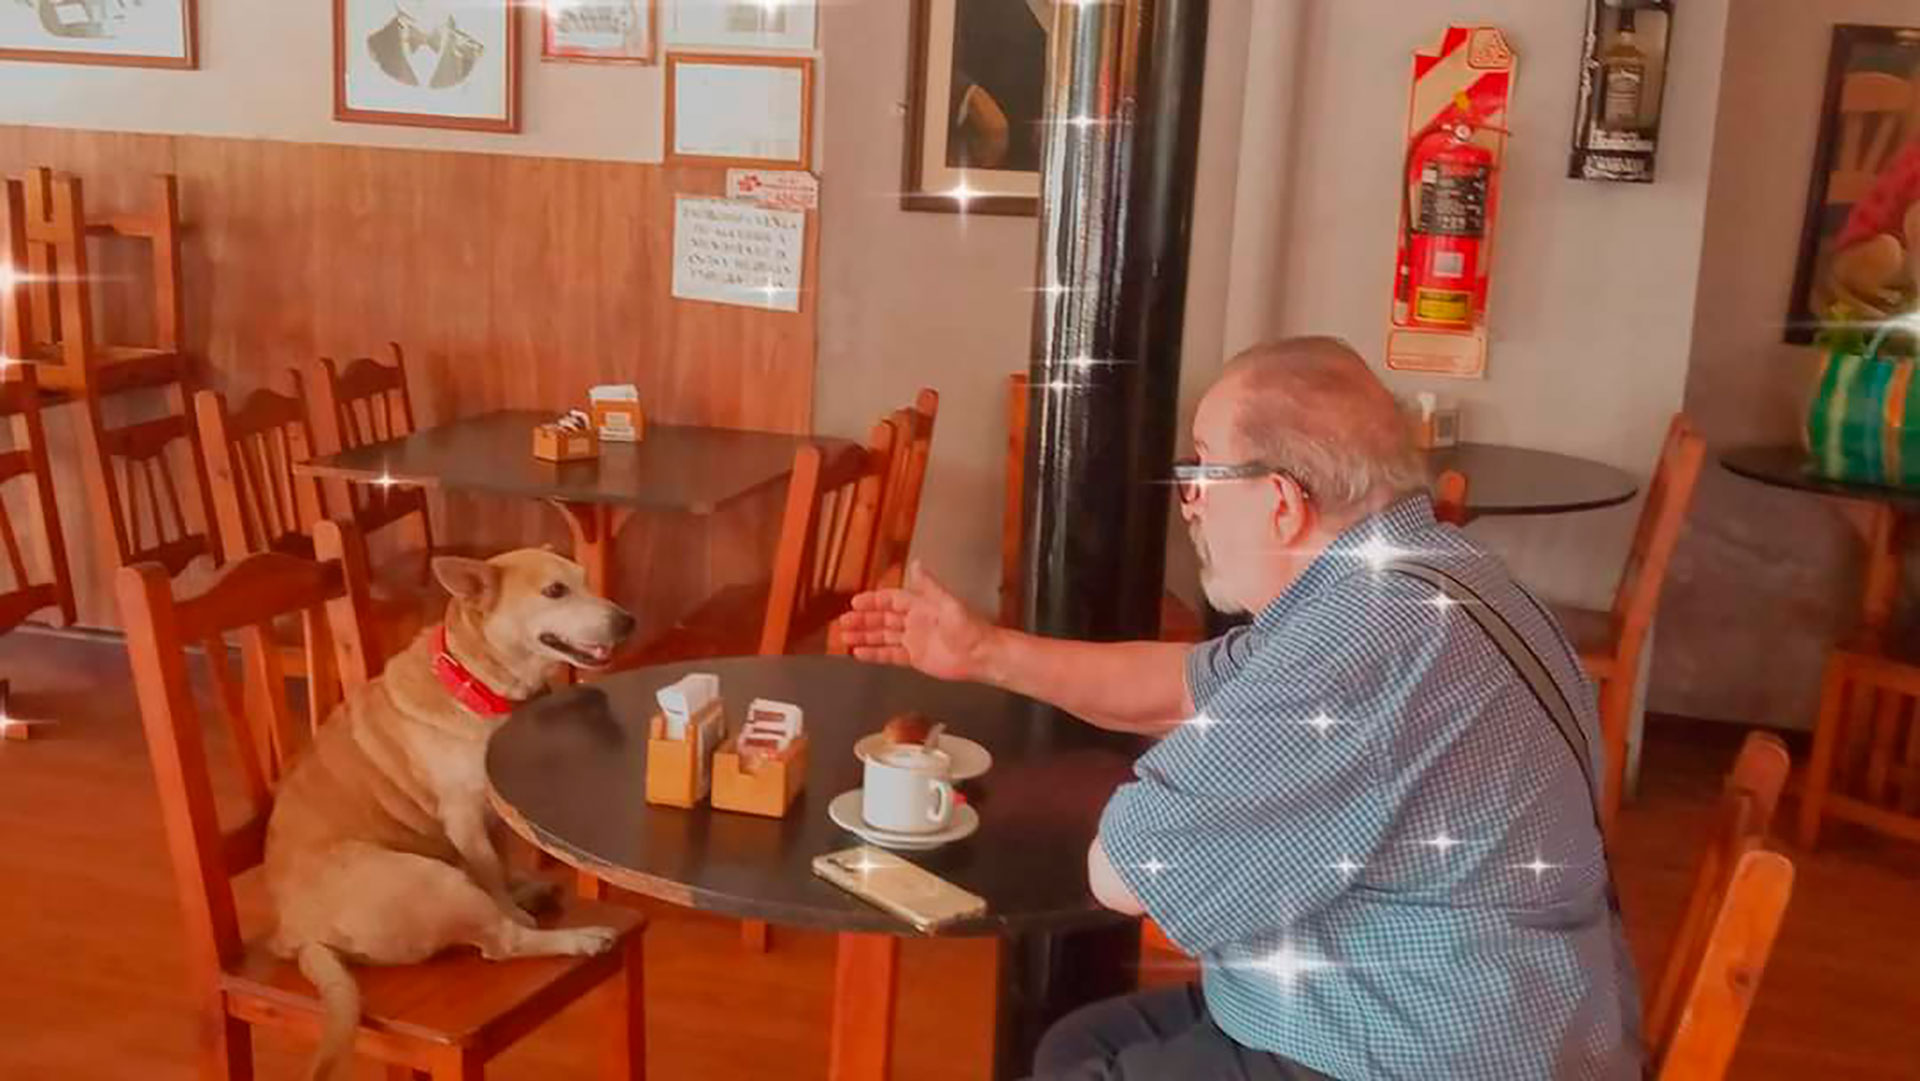 El querido perro comparte horas con los clientes que llegan solos a bar y los escucha muy atento (@dickens_restobar)